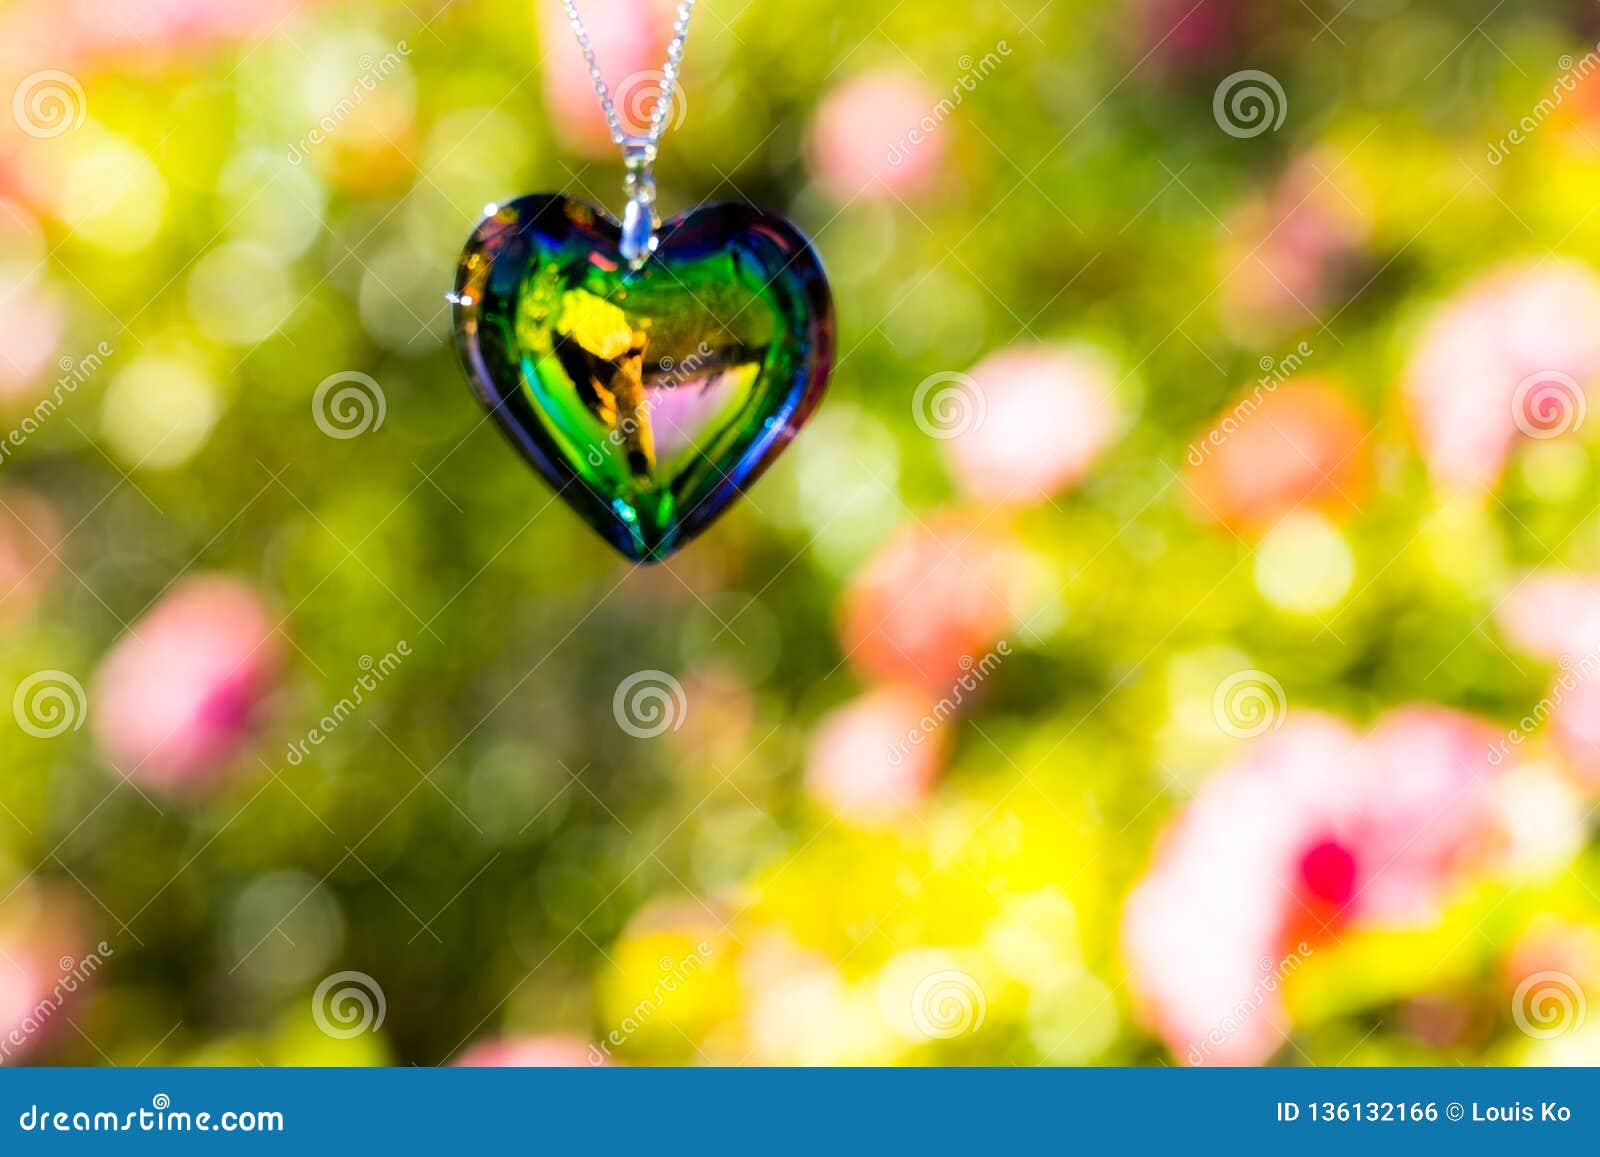 Het glas van het hartkristal brekt zonlicht - het kristalglas van de zonlichtklok backgroundheart brek zonlicht - toenam tuinacht. BIJ 1/4/2019 in Roze tuin